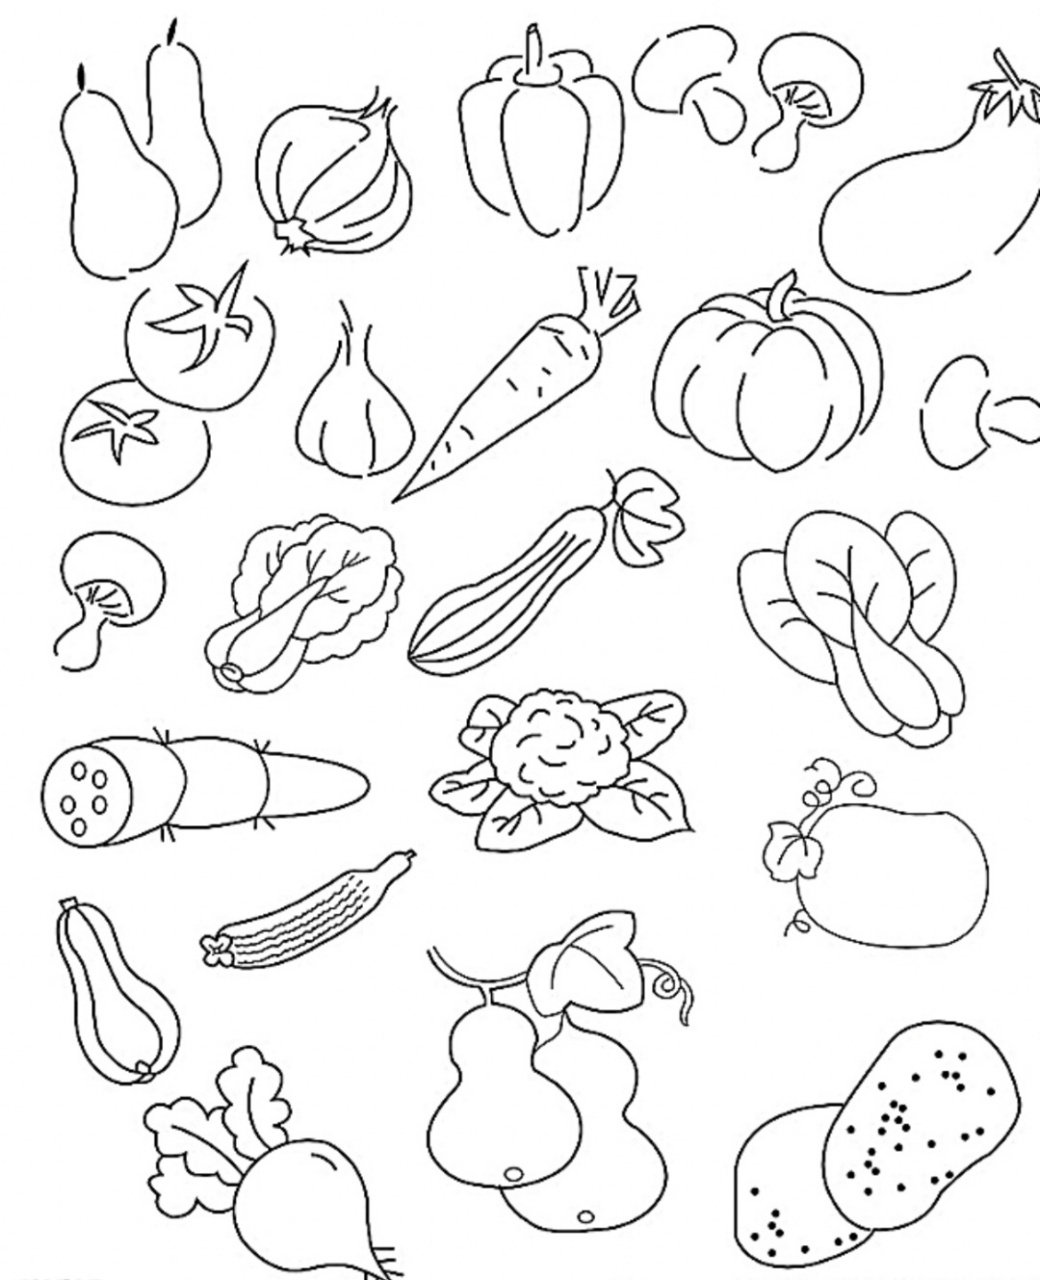 青菜简笔画食物图片